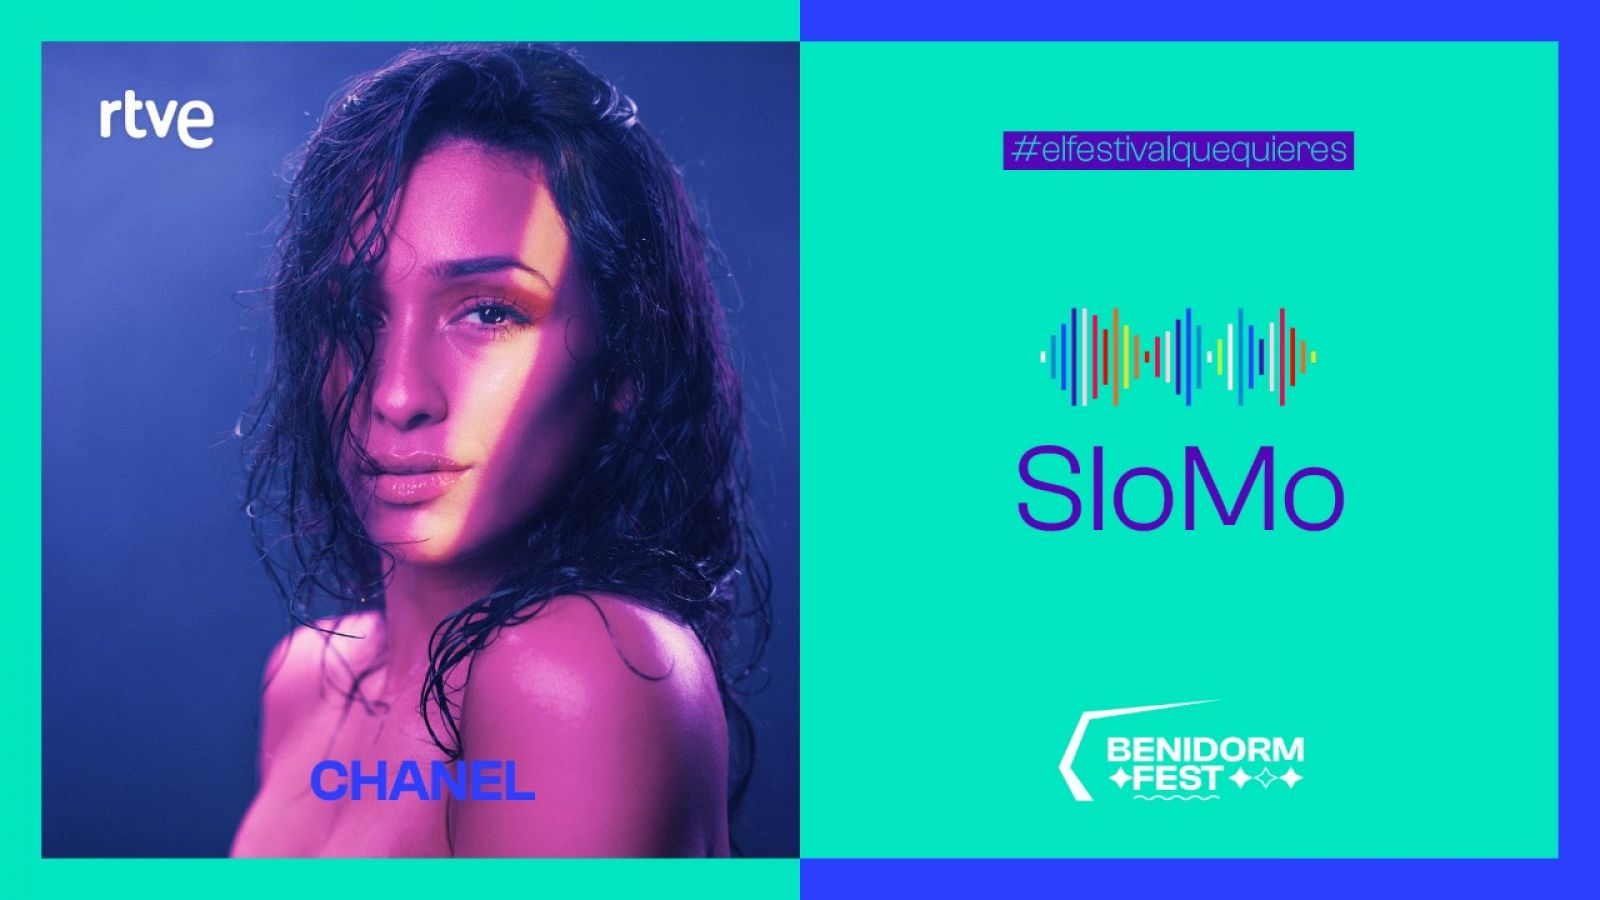 Benidorm Fest: Chanel interpreta "SloMo"